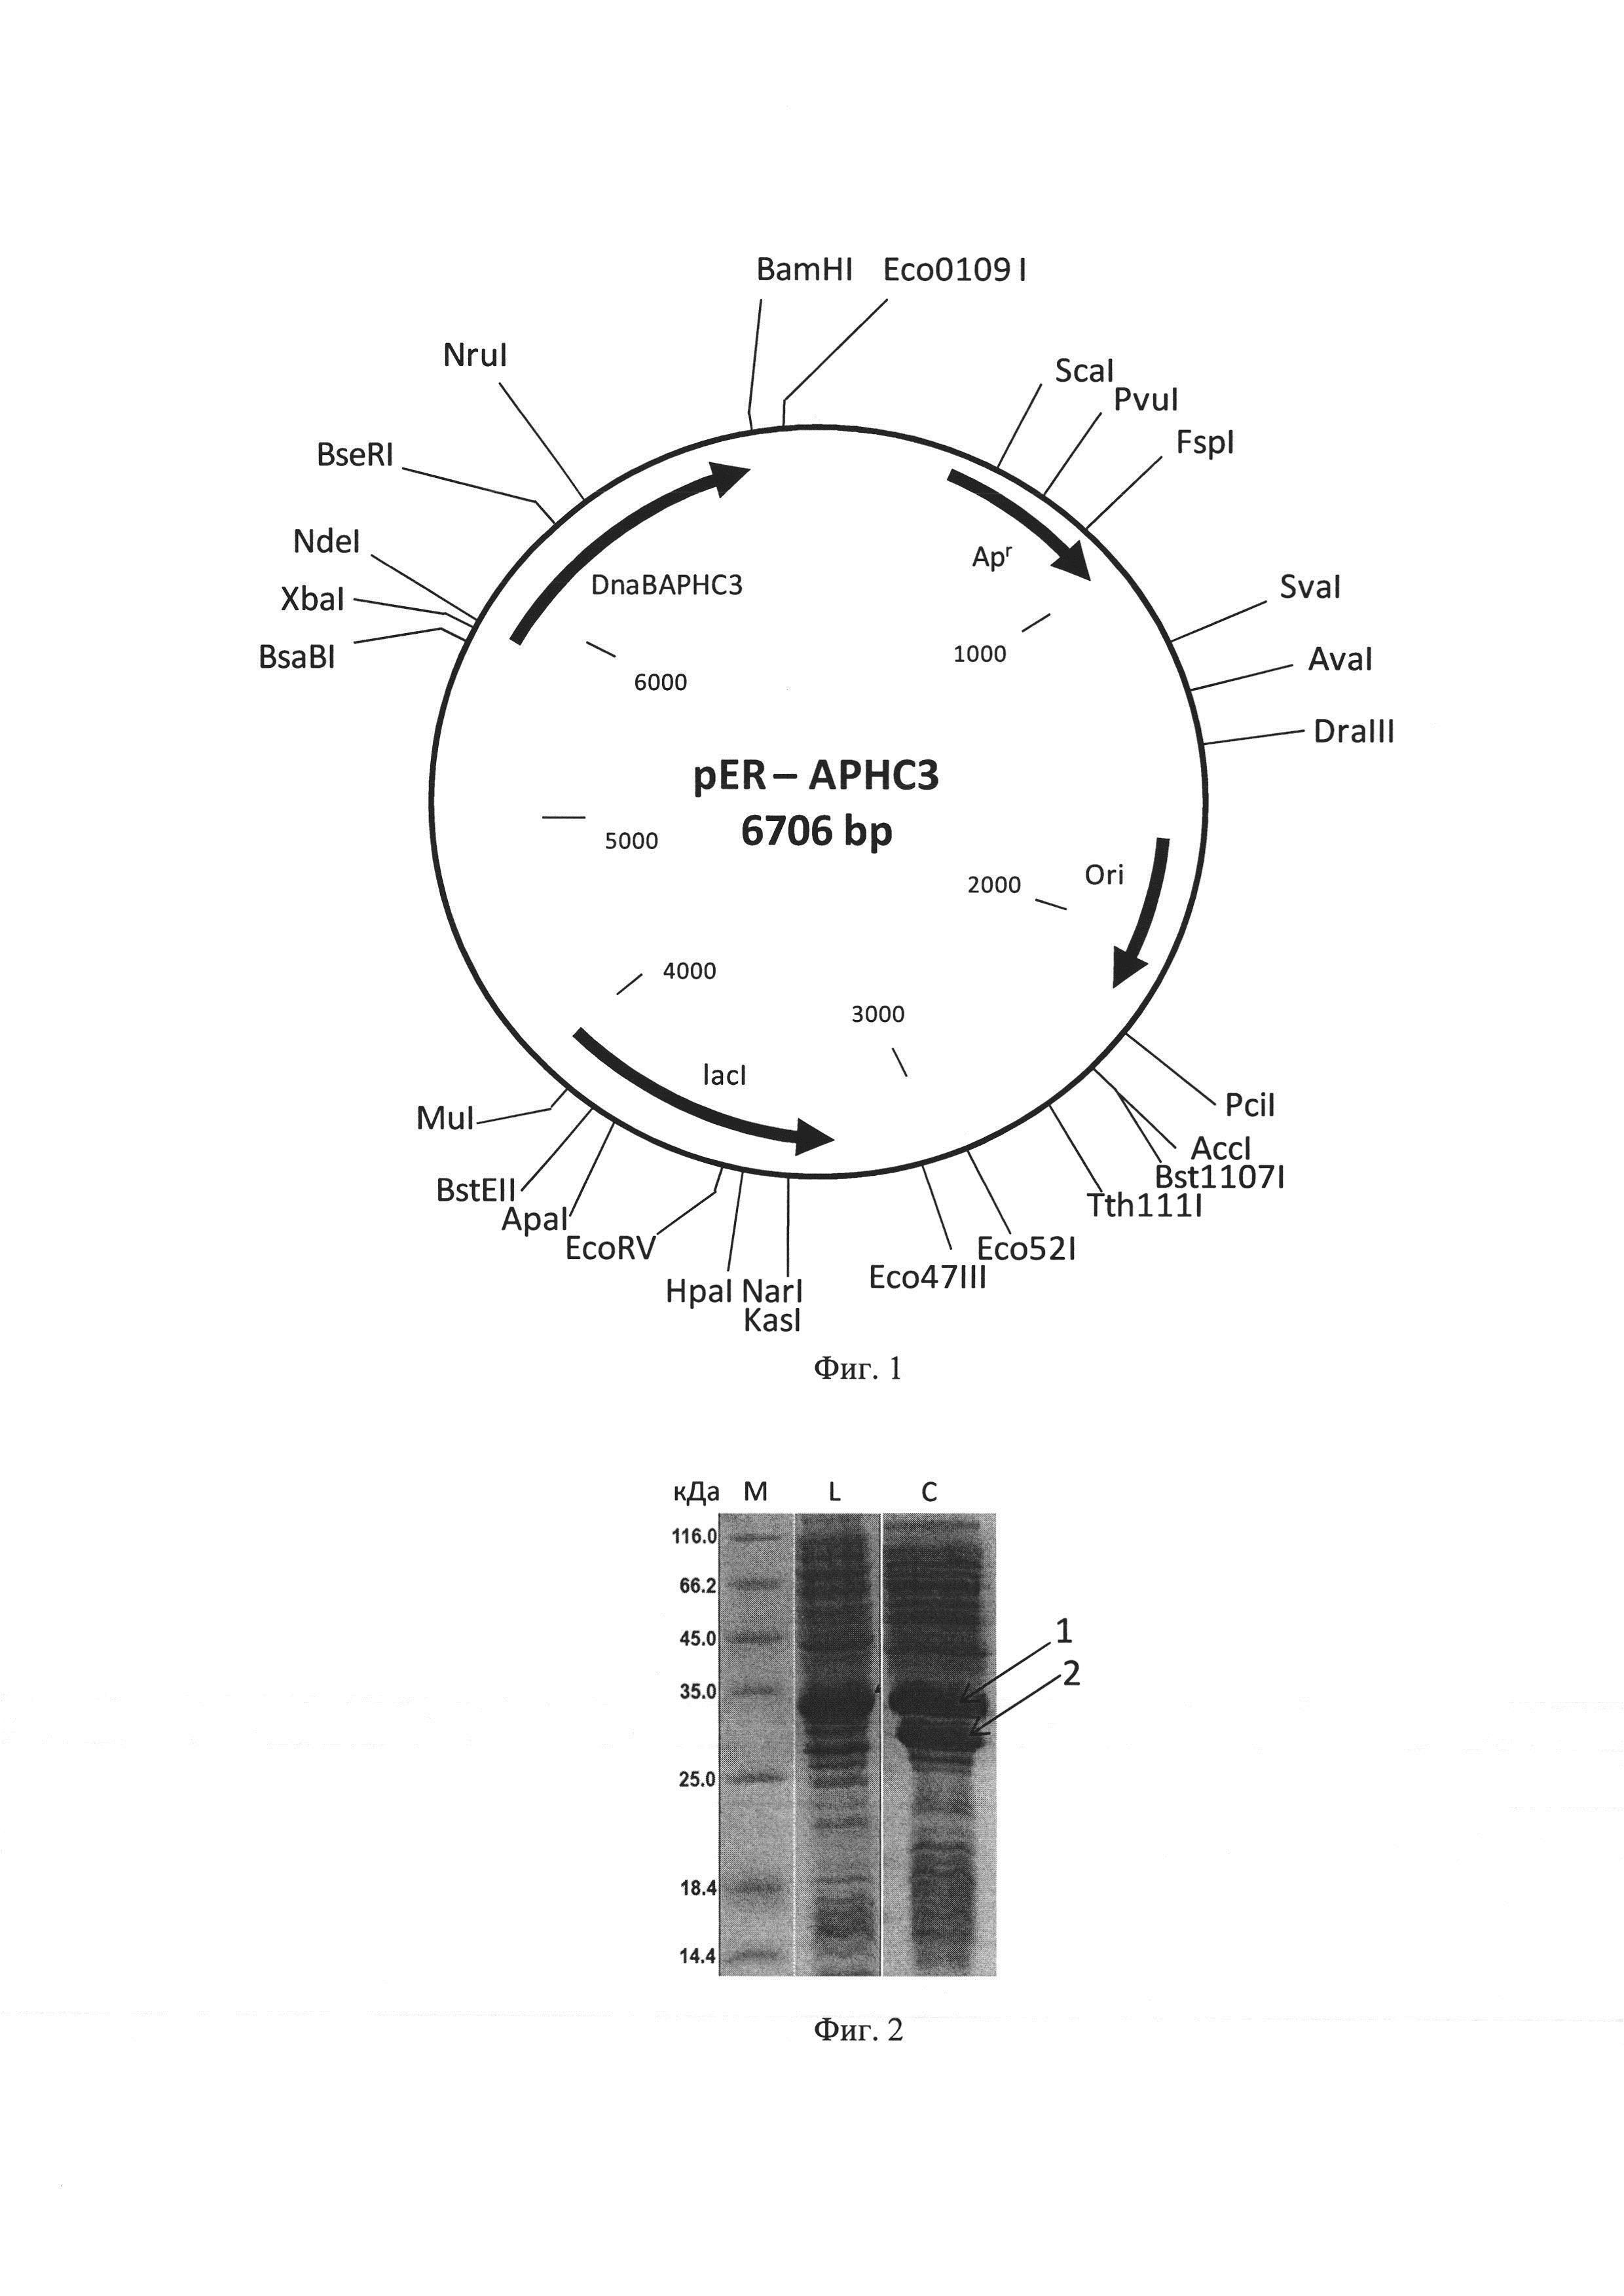 Рекомбинантная плазмидная ДНК pER-APHC3, кодирующая гибридный белок, способный к автокаталитическому расщеплению с образованием APHC3, штамм Escherichia coli C3030/pER-APHC3 продуцент указанных белков и способ получения рекомбинантного APCH3